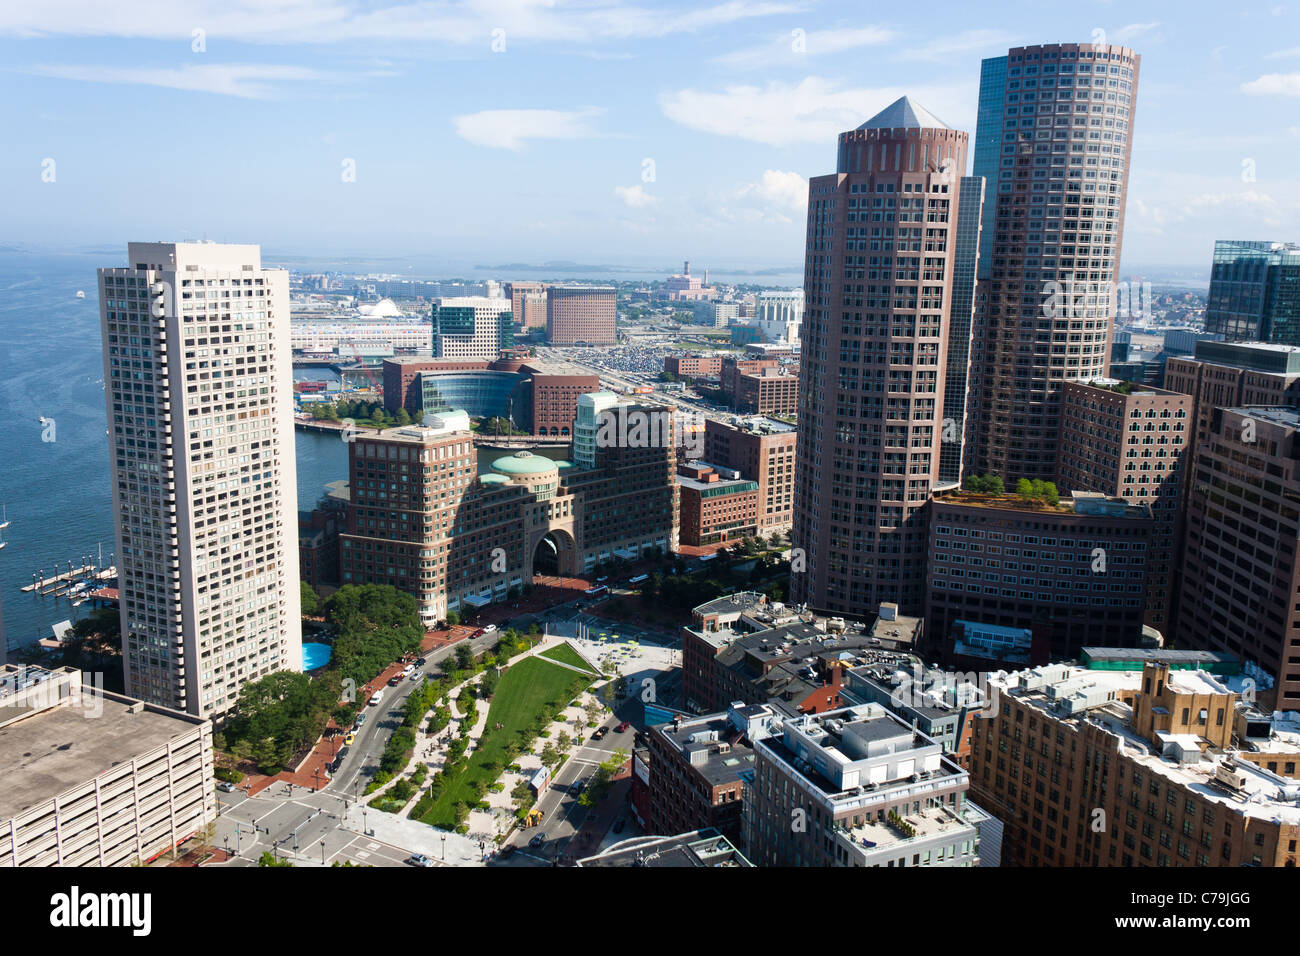 Vue aérienne du port de Boston Waterfront Banque D'Images